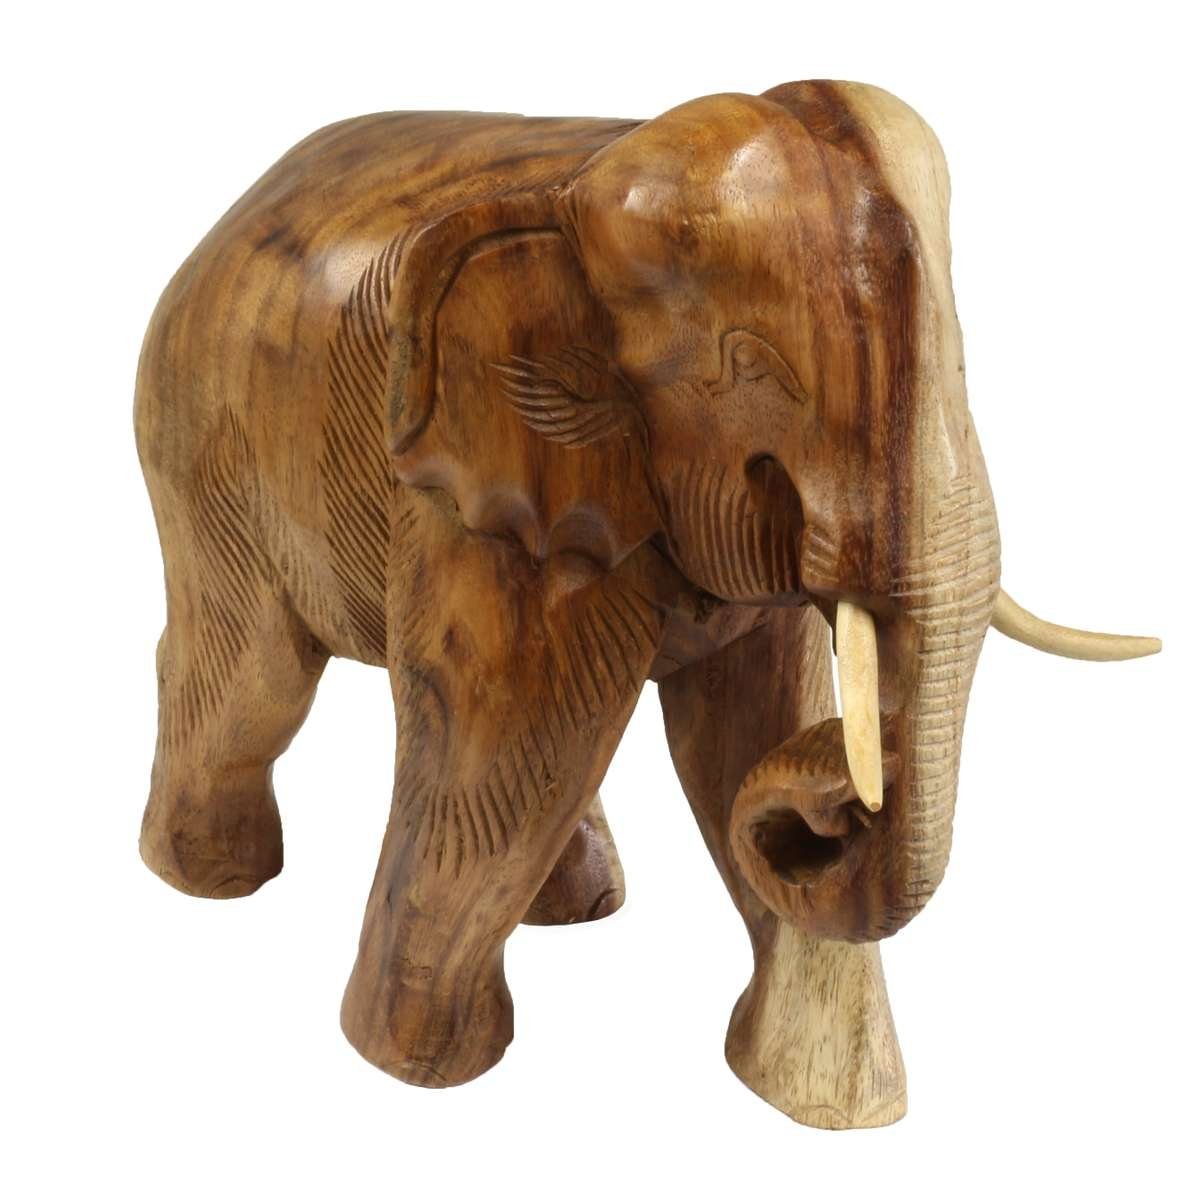 Tierfigur Elefant aus Glas handgefertigte Glasfigur Schönes Geschenk 2,5 cm hoch 